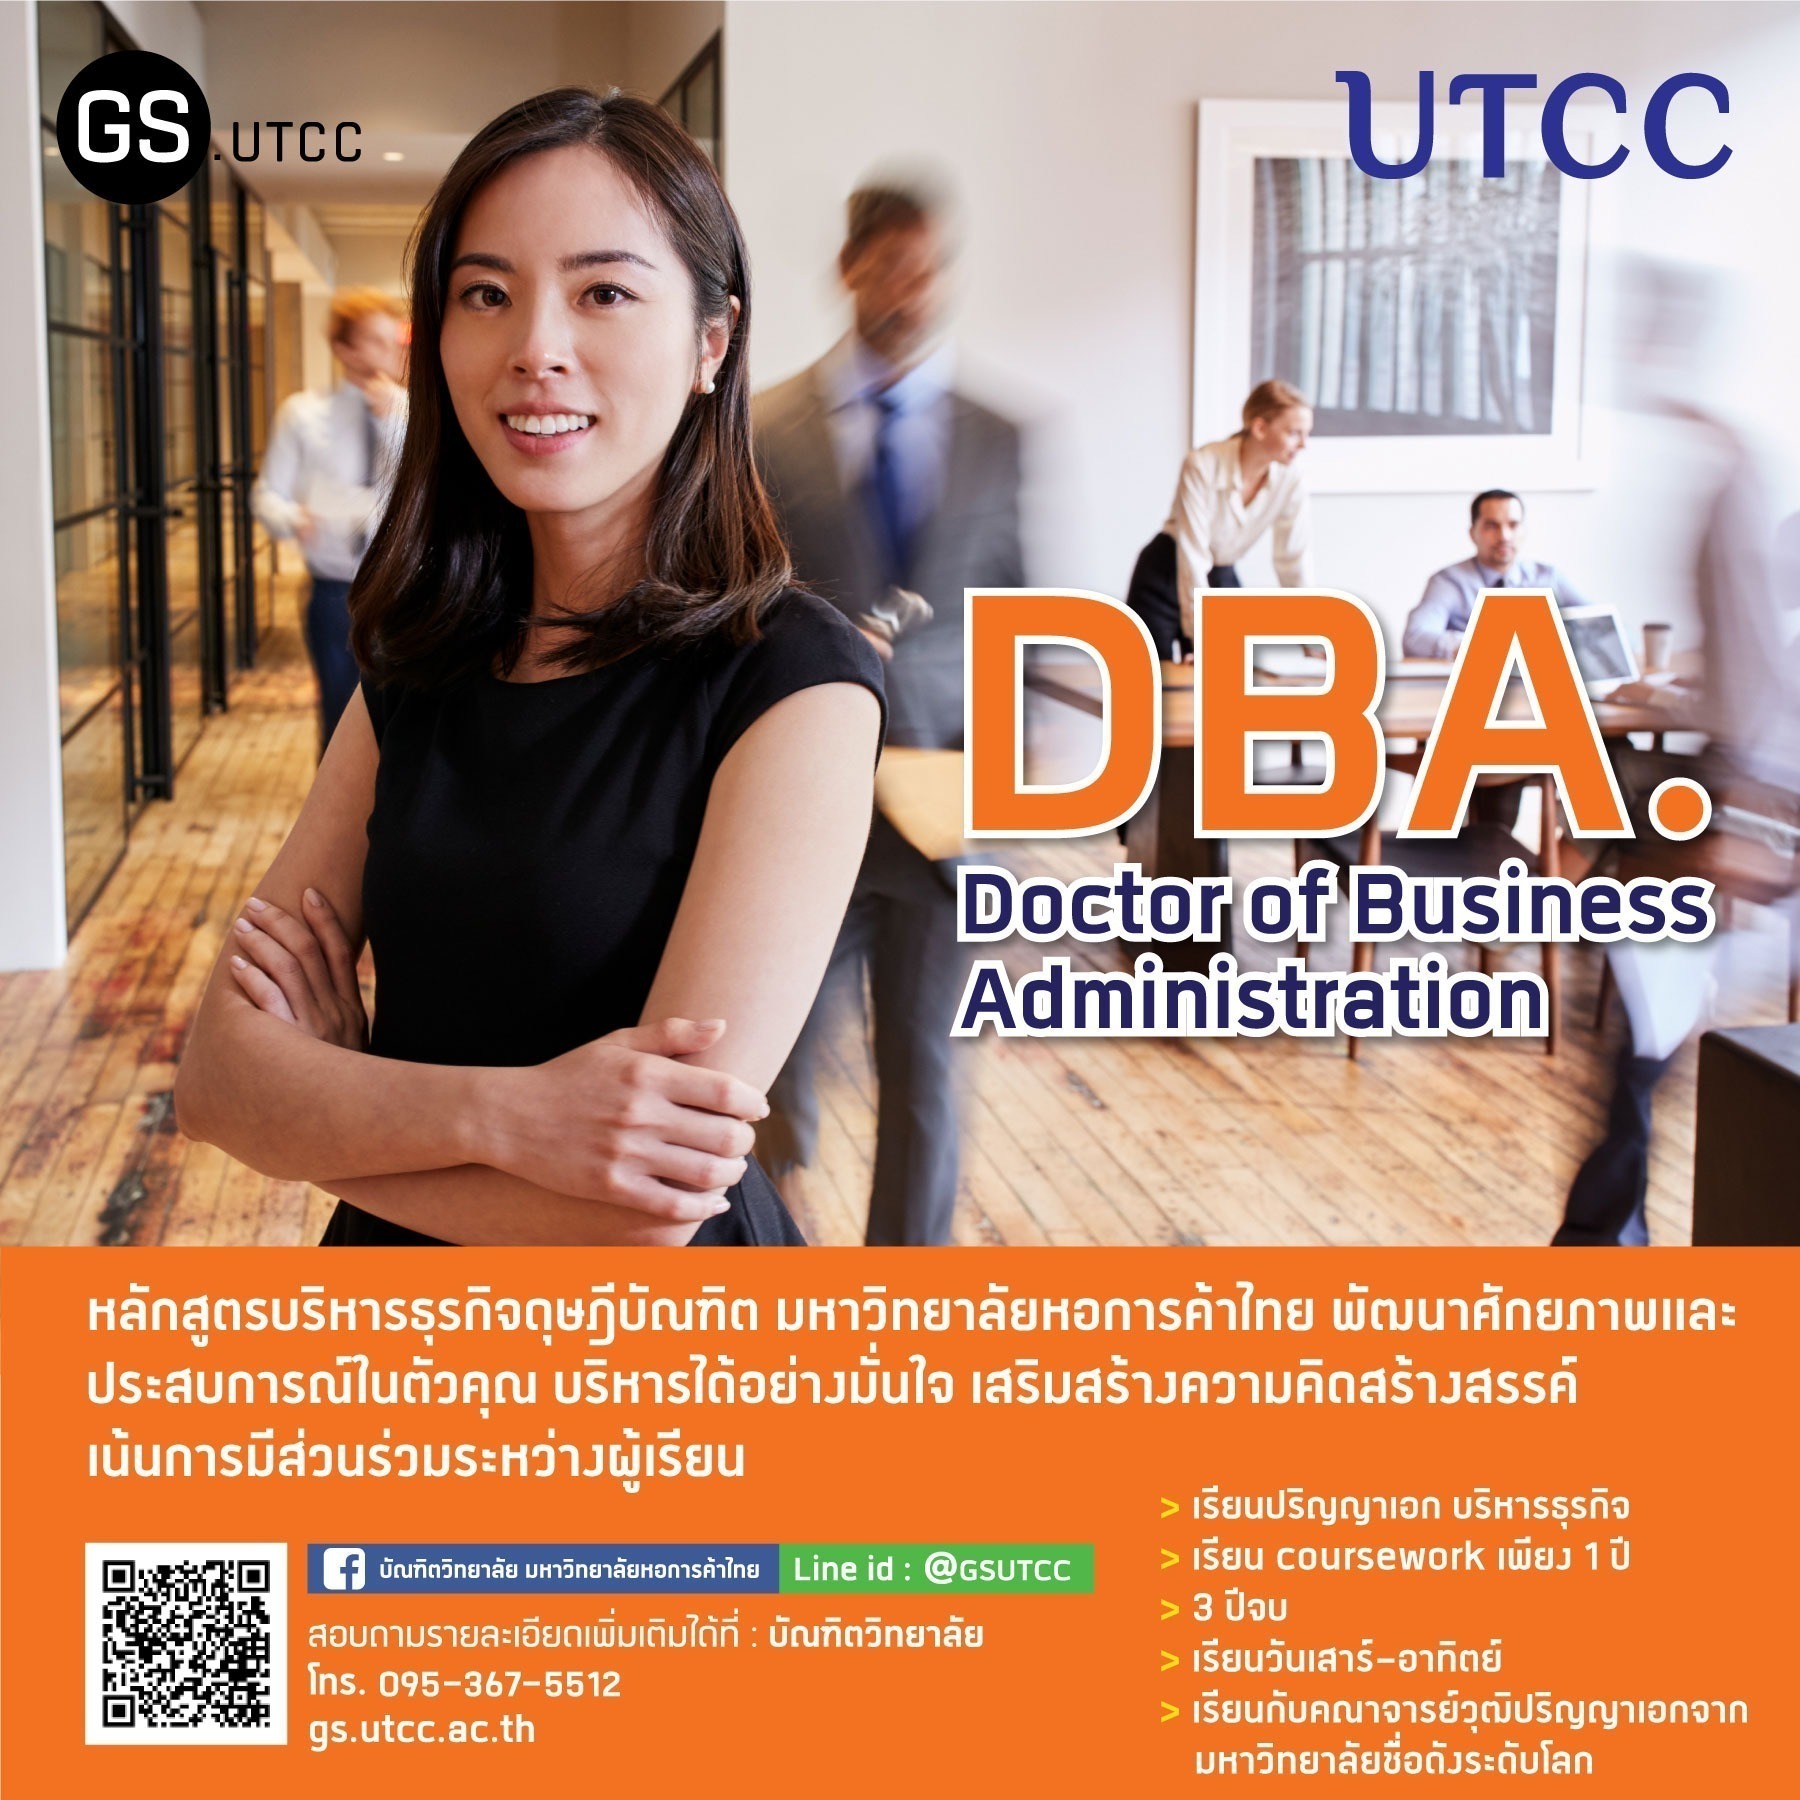 หลักสูตรปริญญาเอก บริหารธุรกิจดุษฎีบัณฑิต DBA. มหาวิทยาลัยหอการค้าไทย